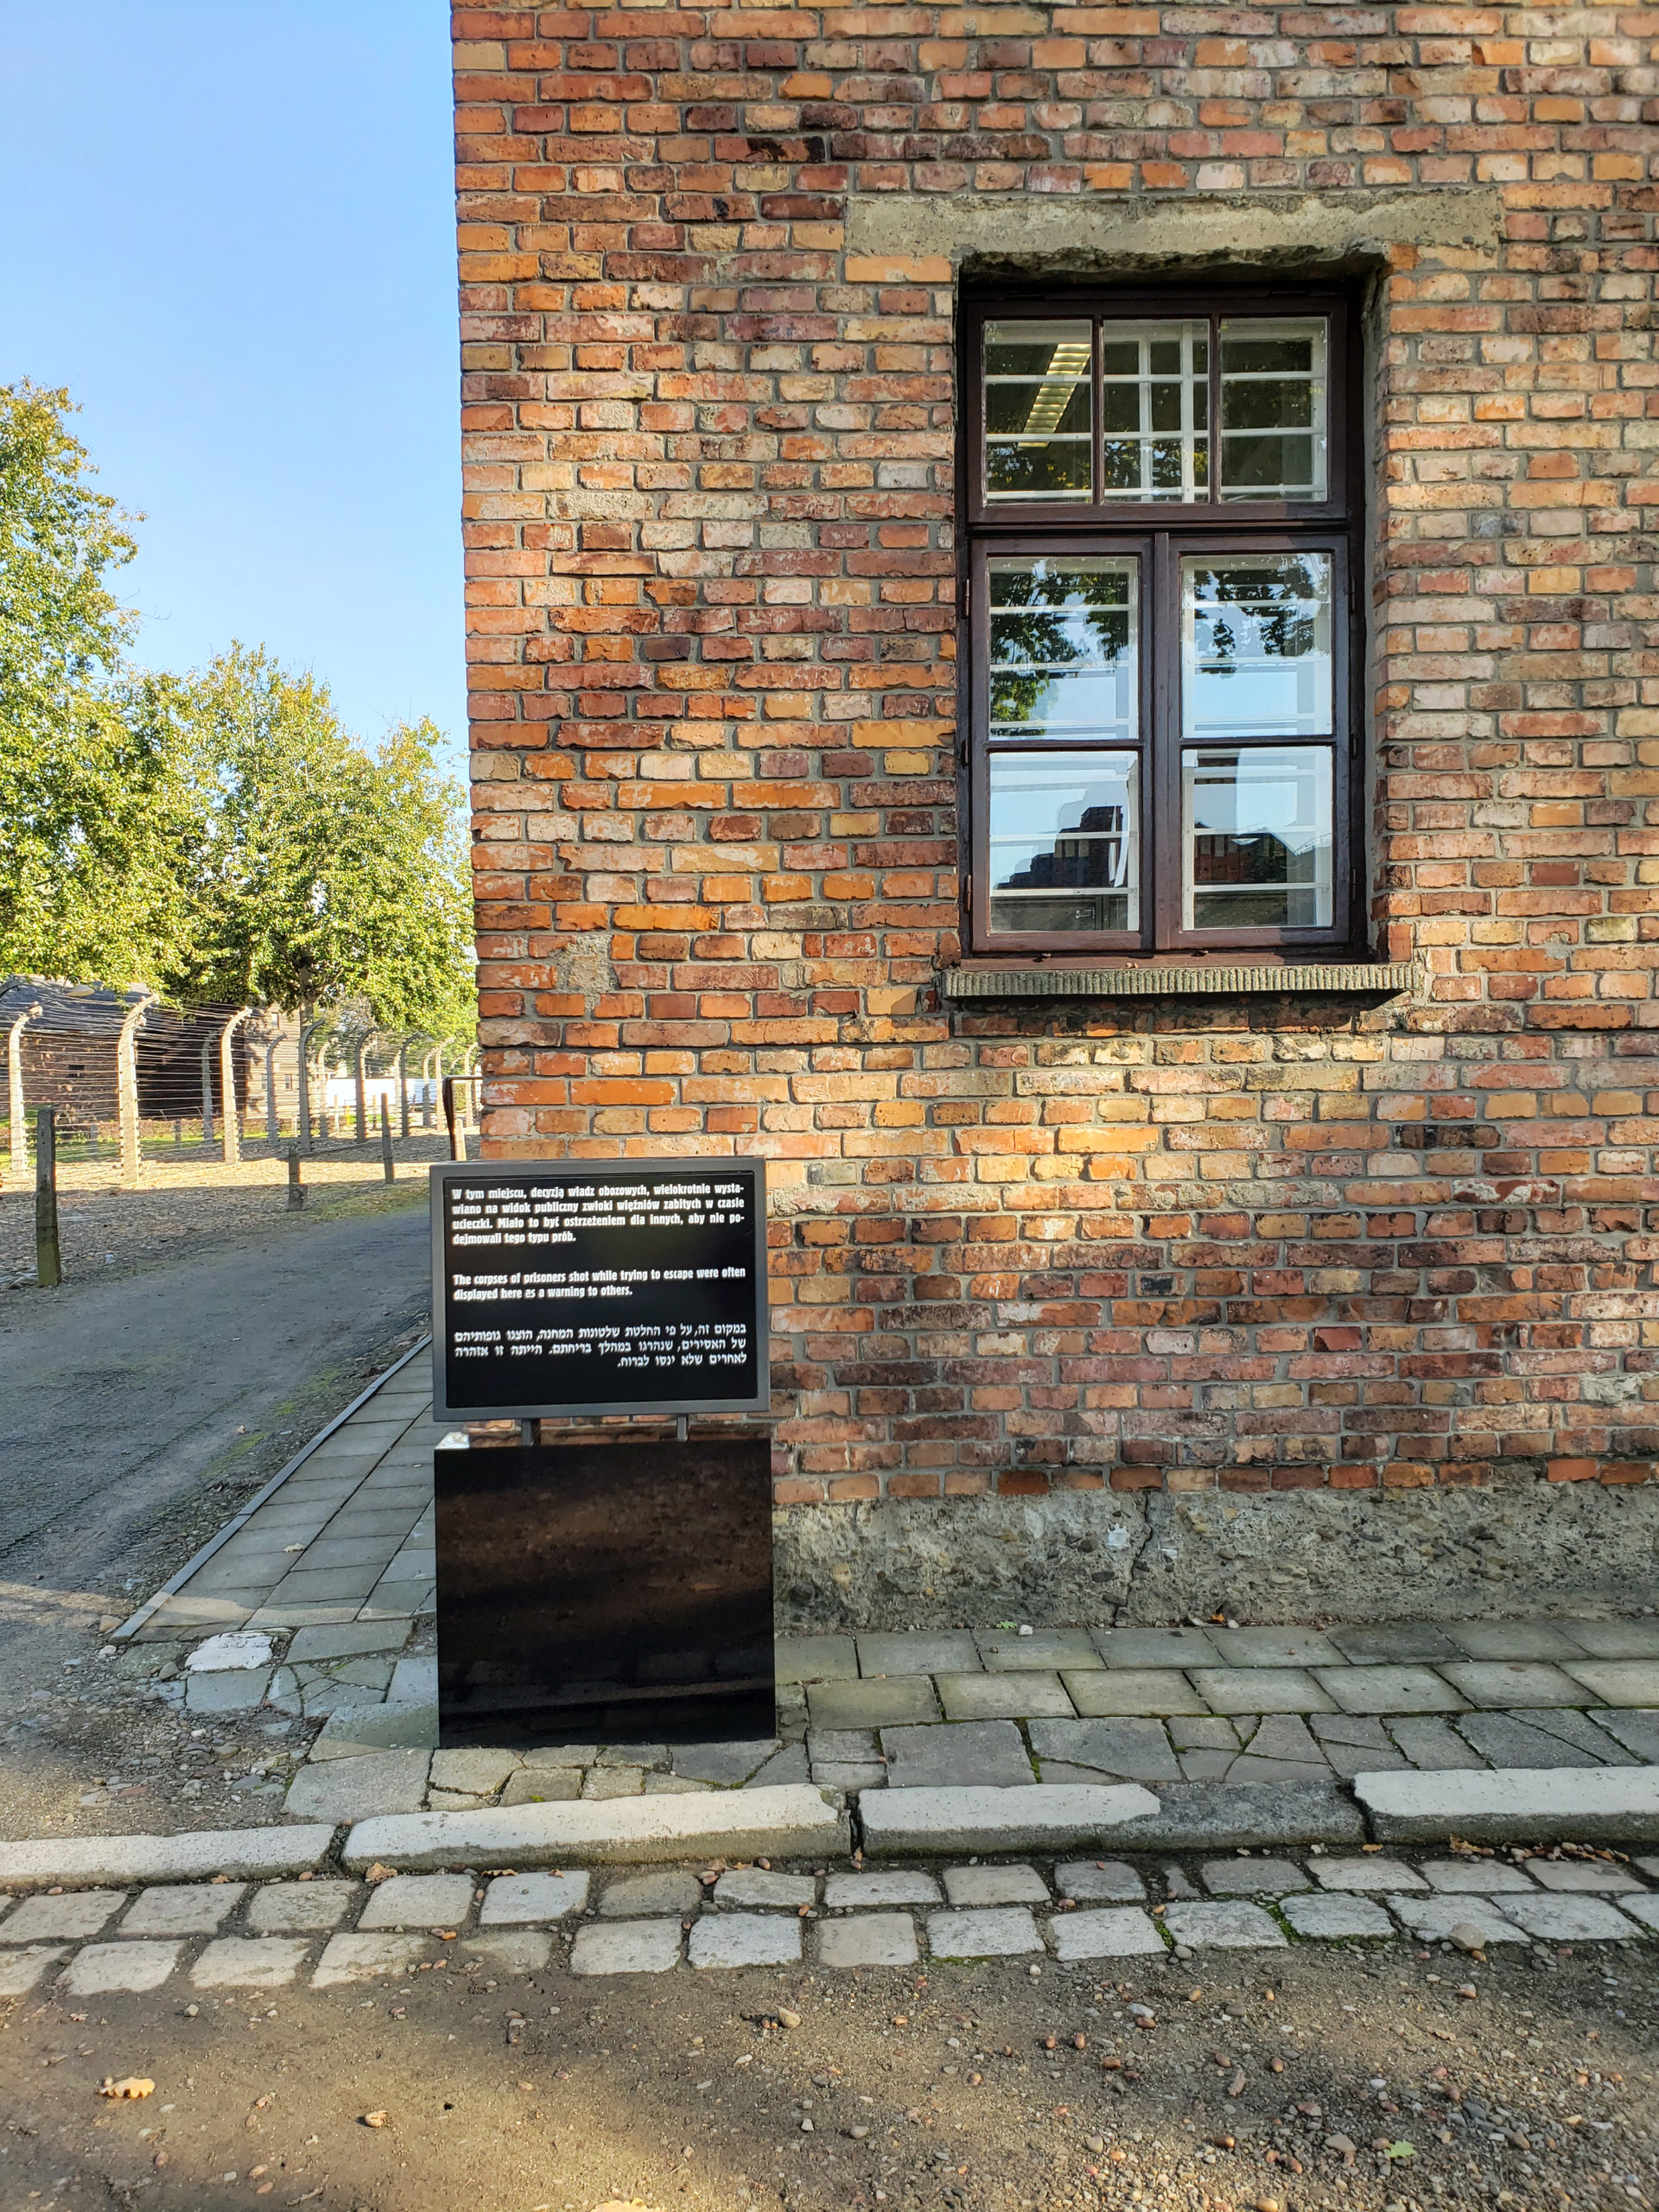 A Present Walk Through Yesterday's History - A Visit To Auschwitz-Birkenau